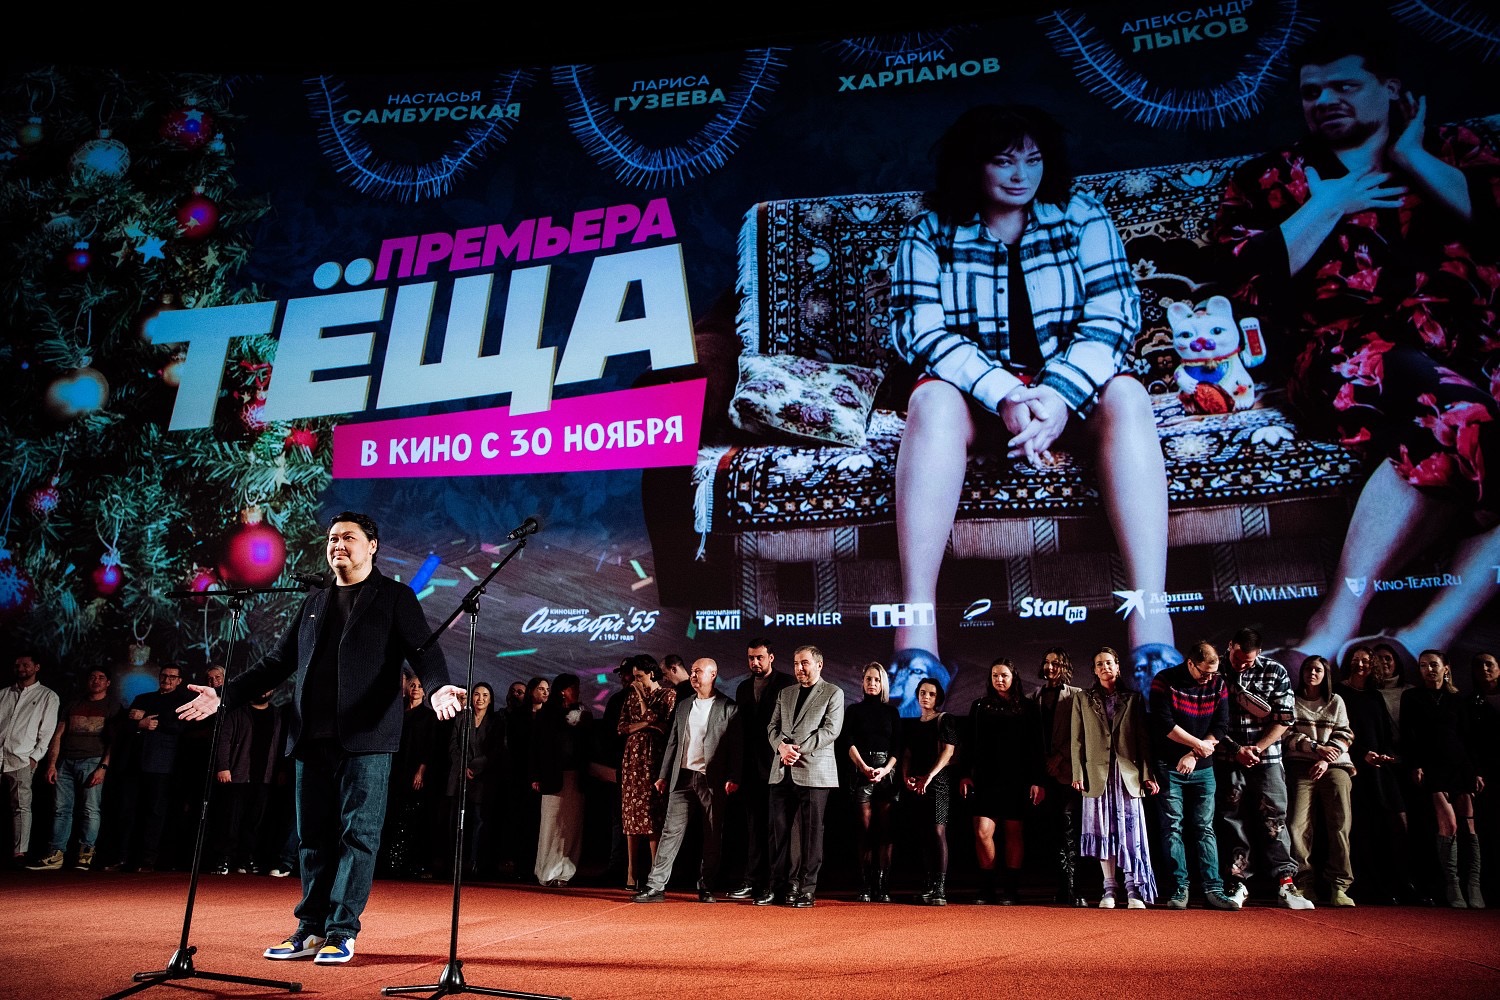 Филипп Киркоров, Margo, Лариса Гузеева, и другие звезды появились на премьере фильма ТЁЩА